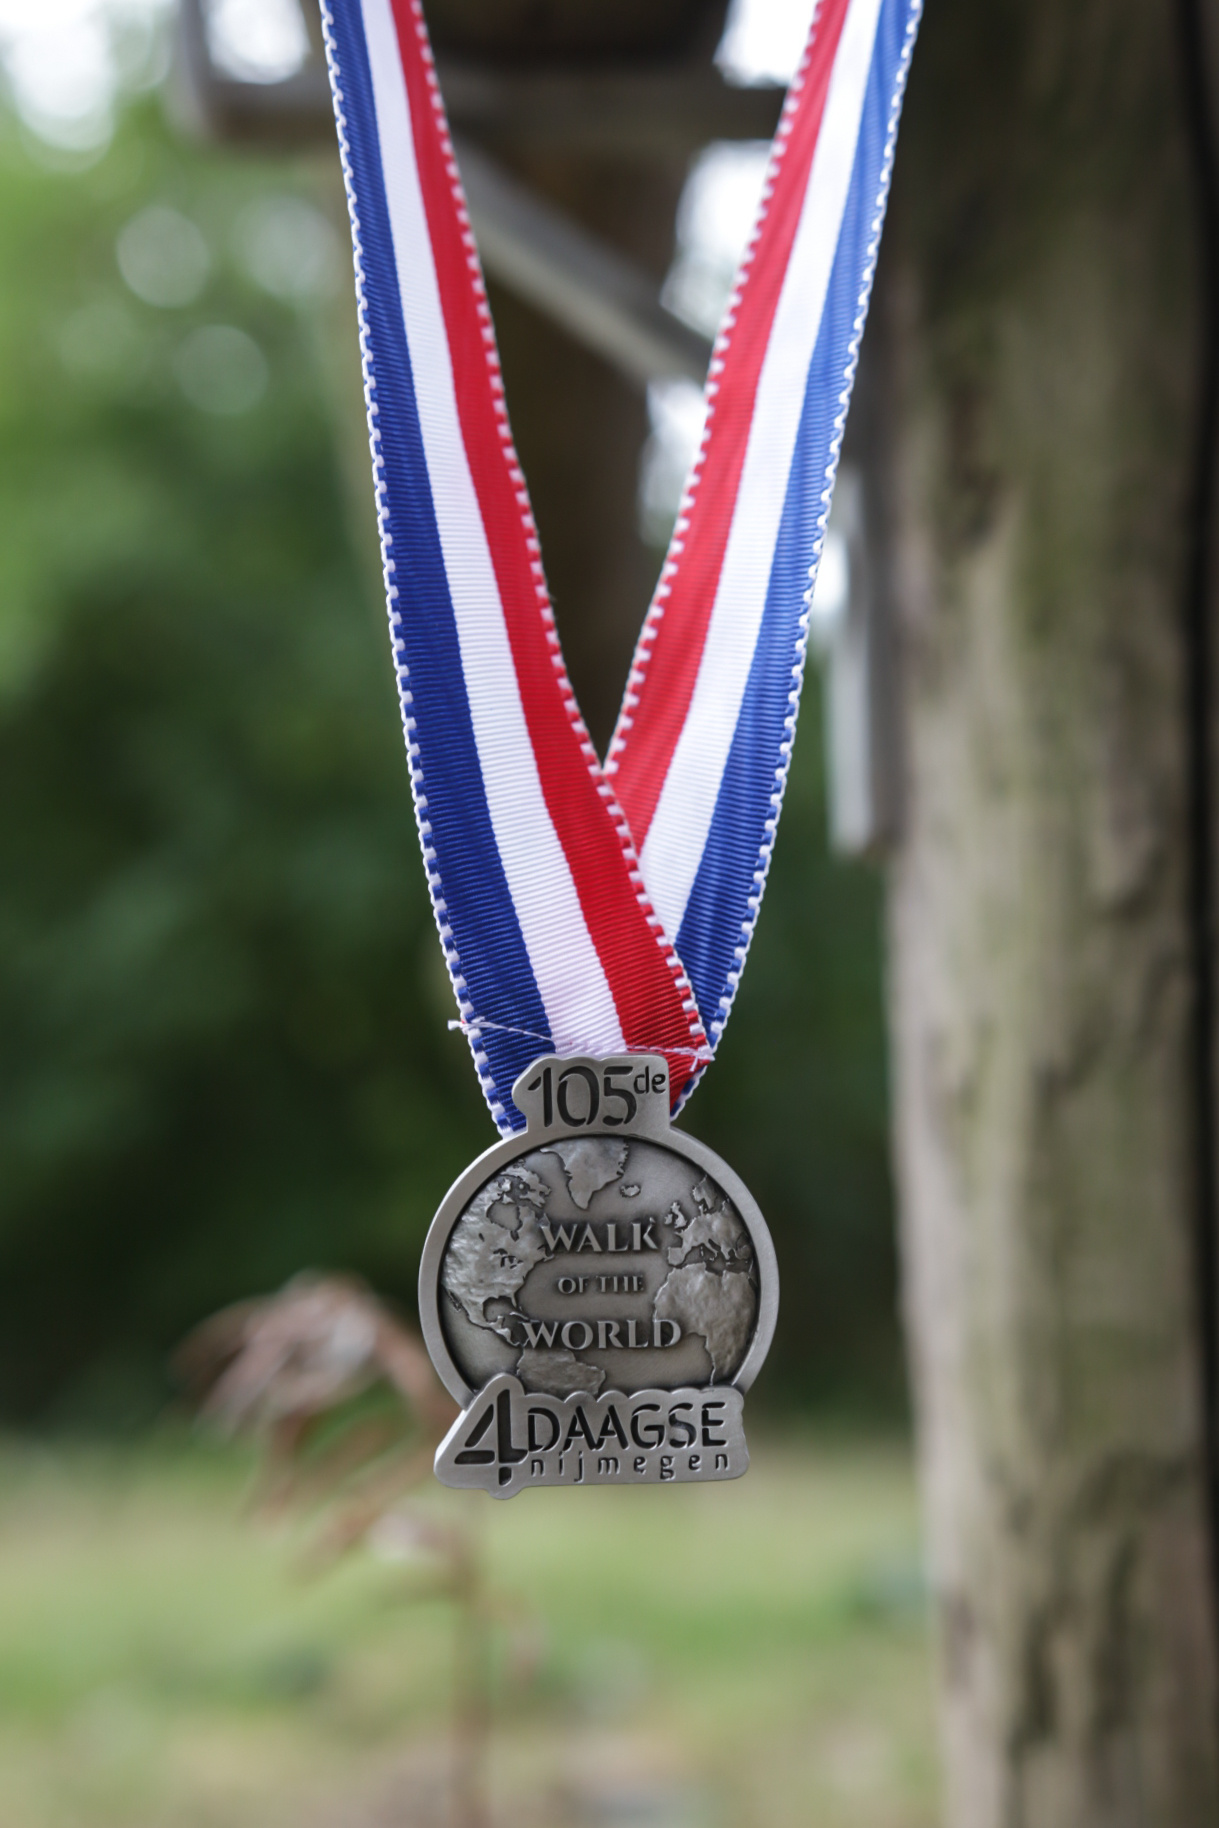 DTR Vierdaagse editie medaille  aan lint